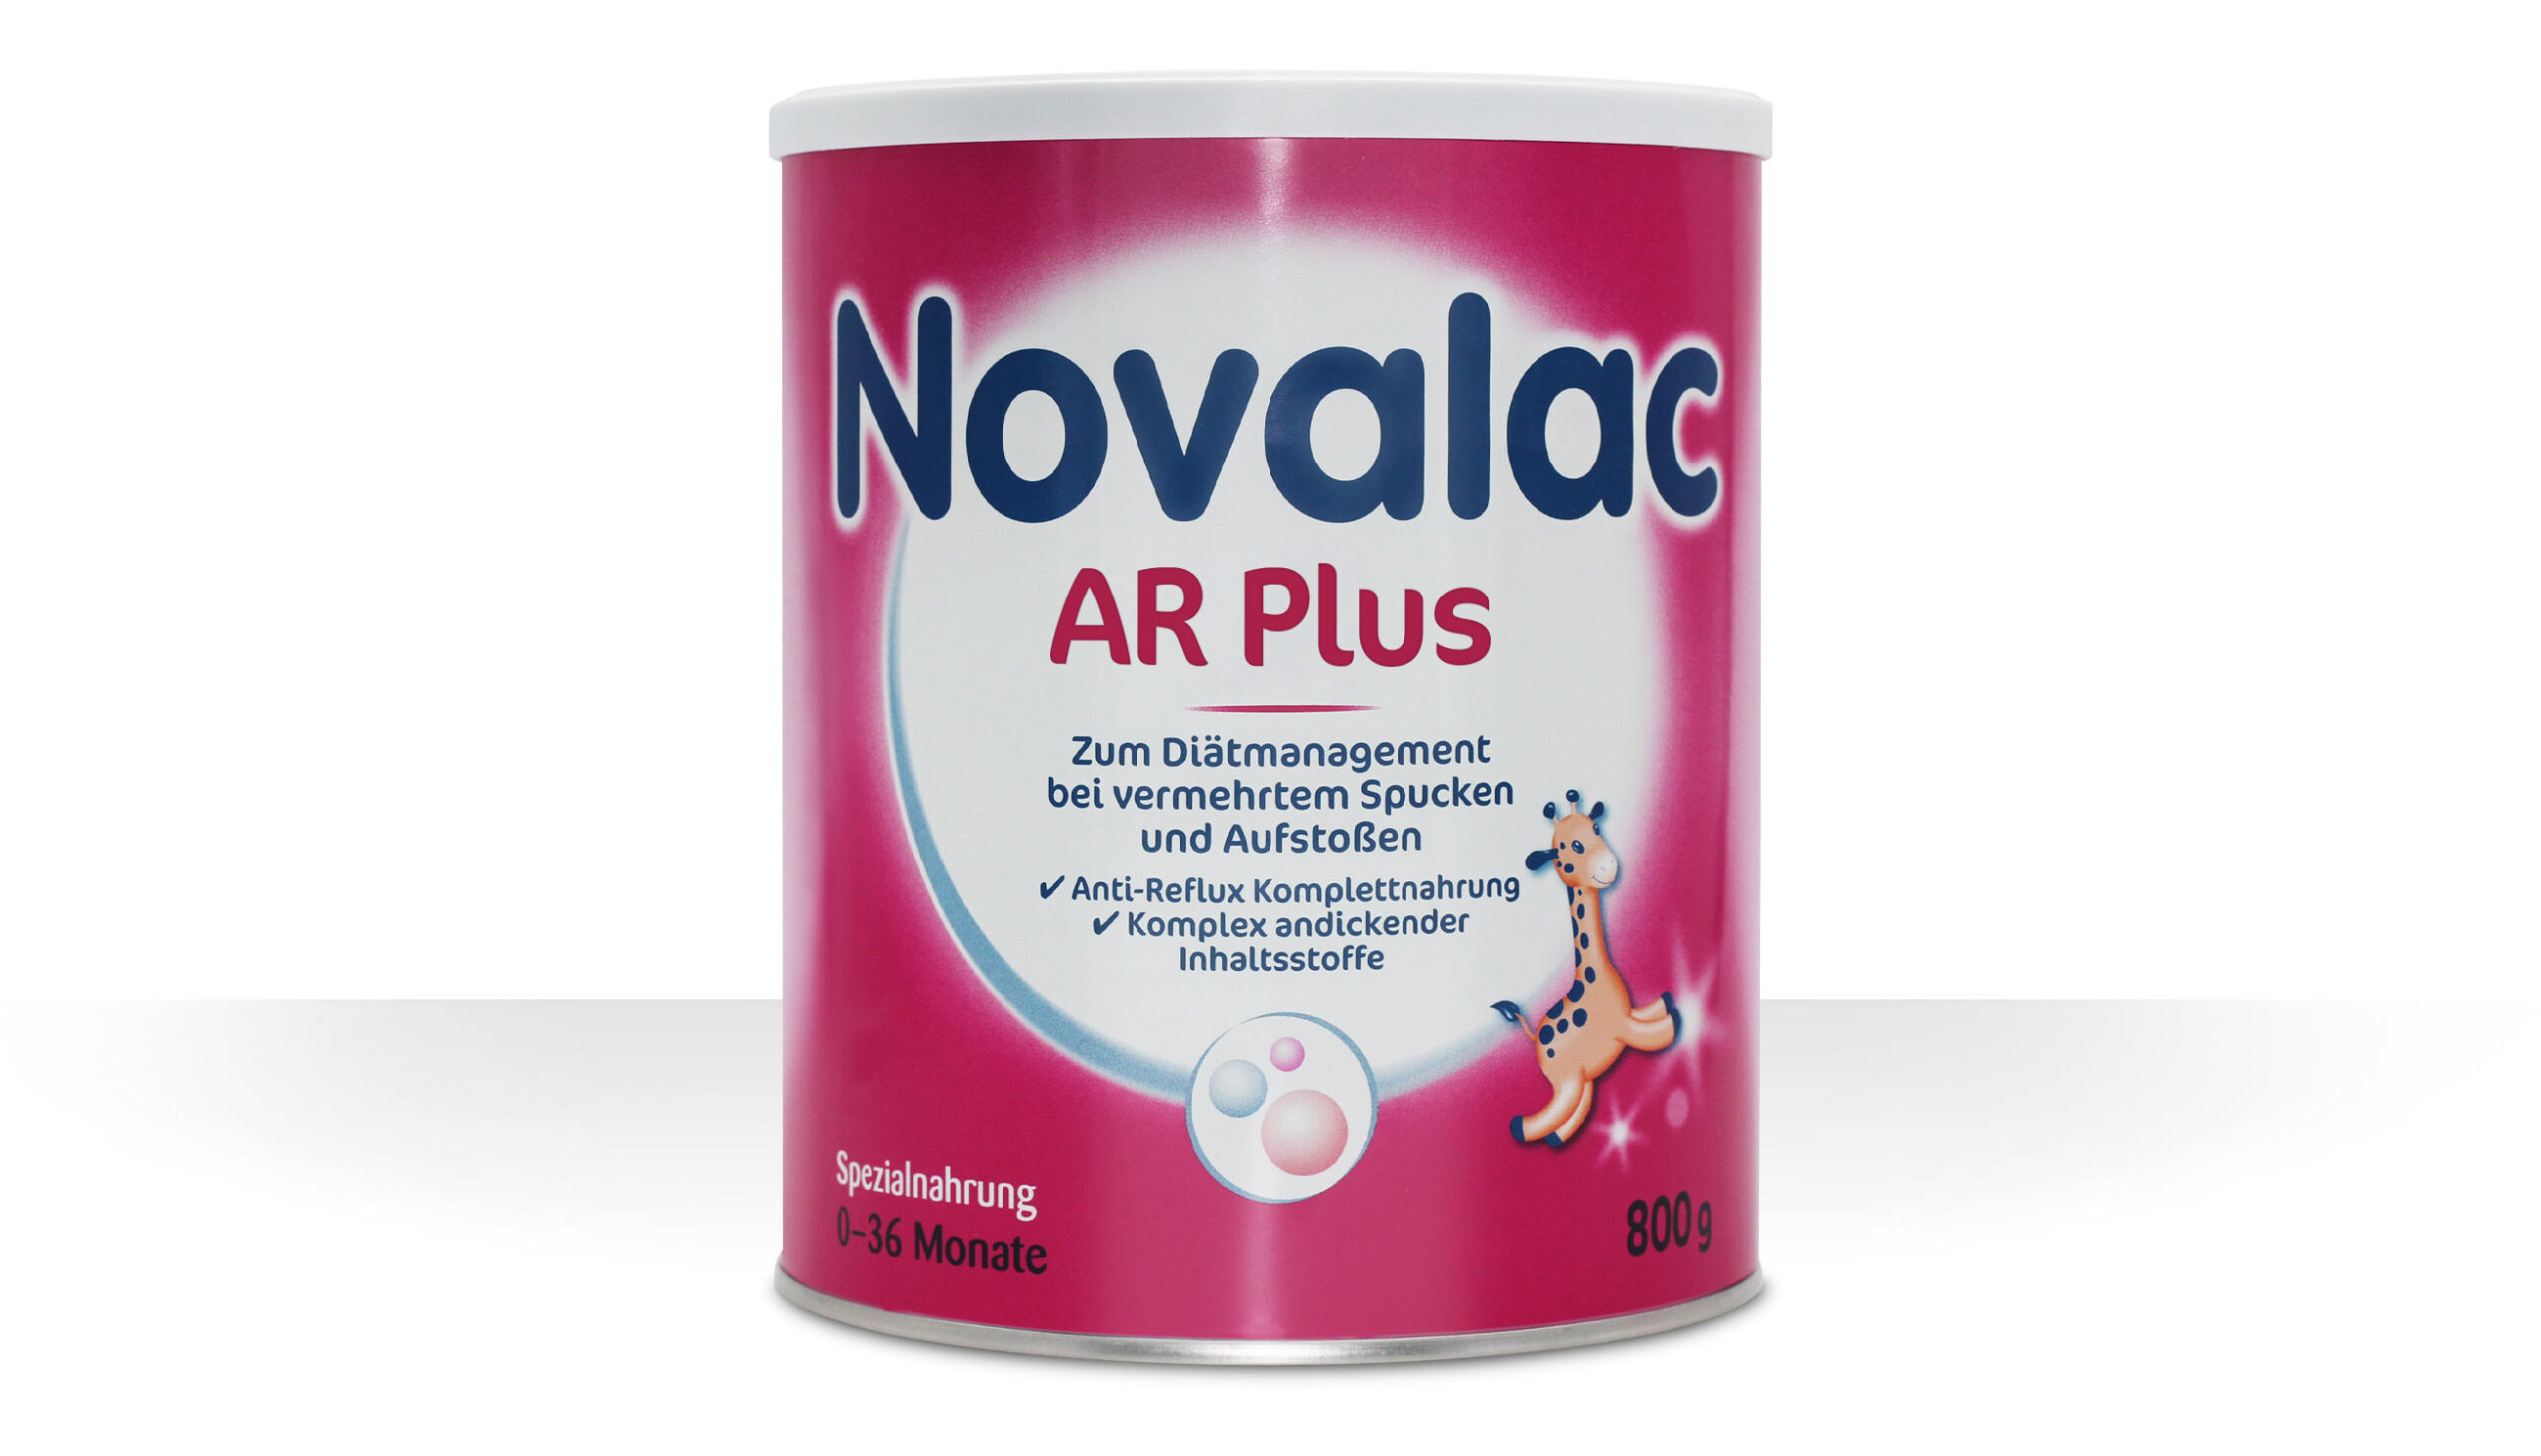 Novalac AR Plus Säuglingsspezialnahrung